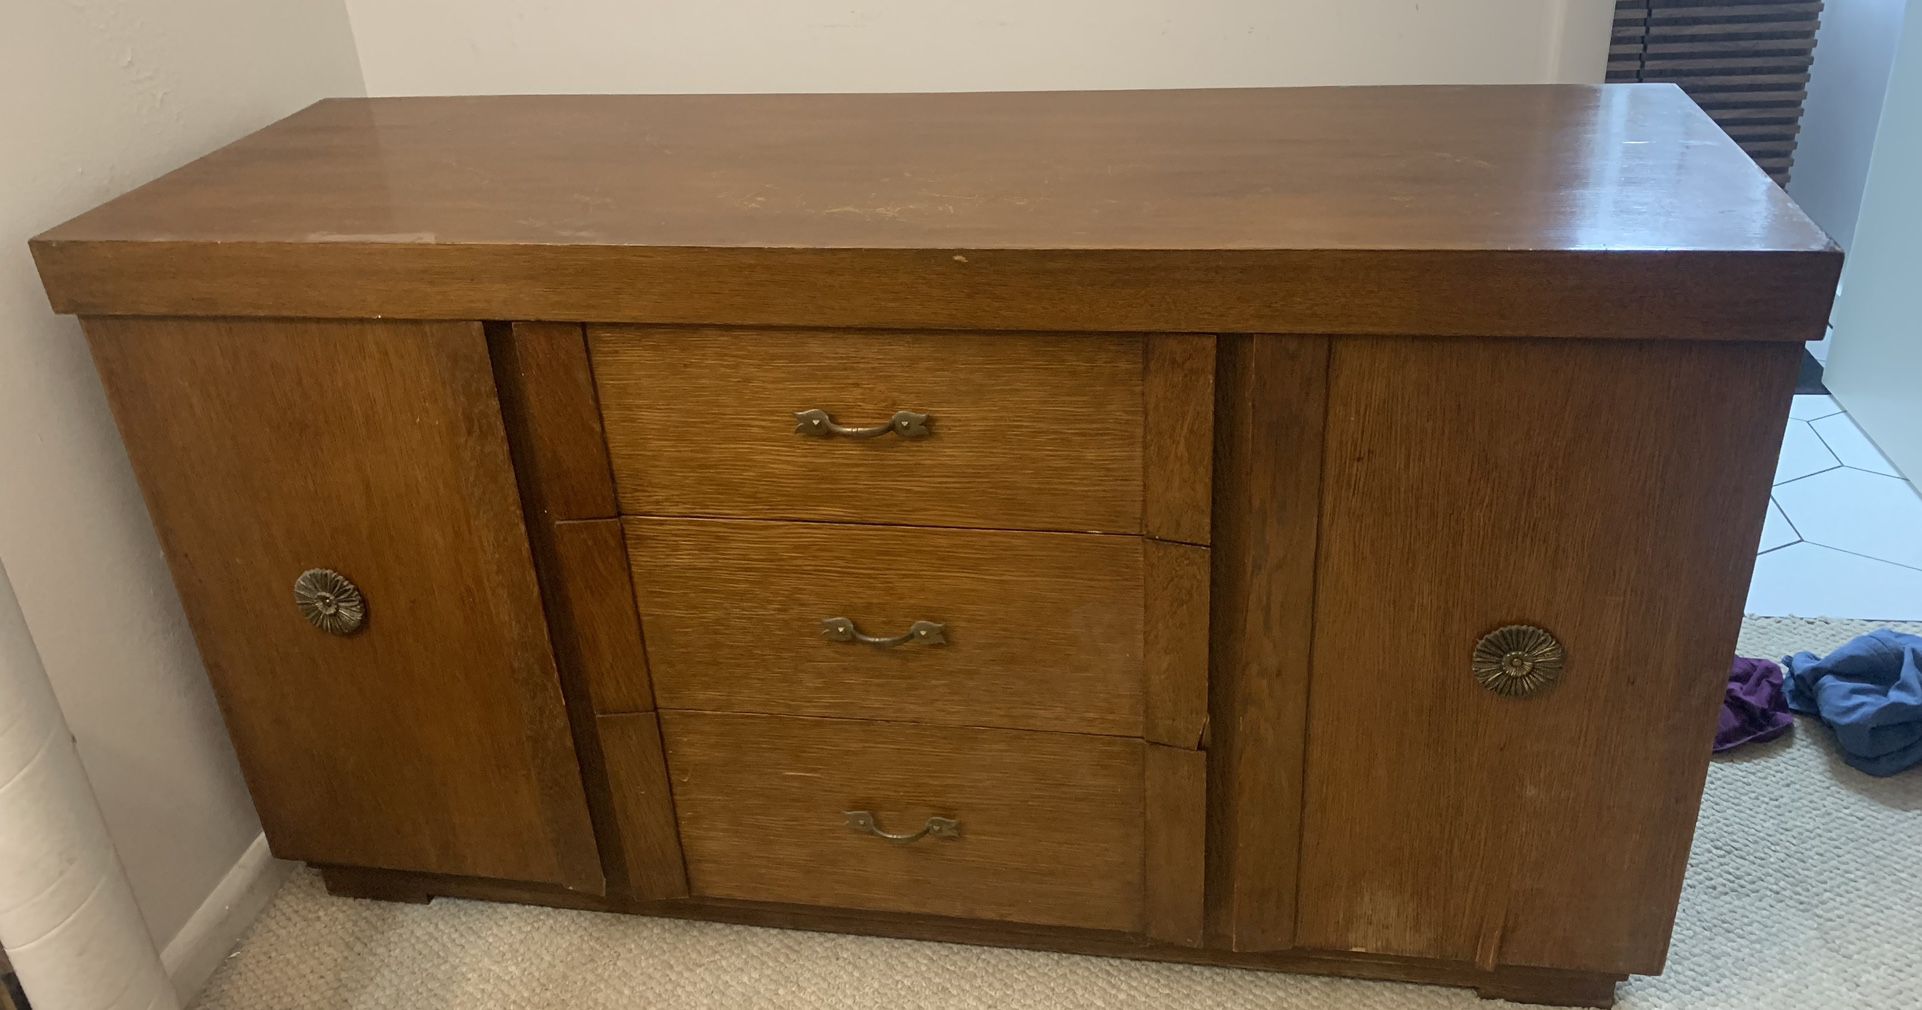 Antique Solid Wood Dresser